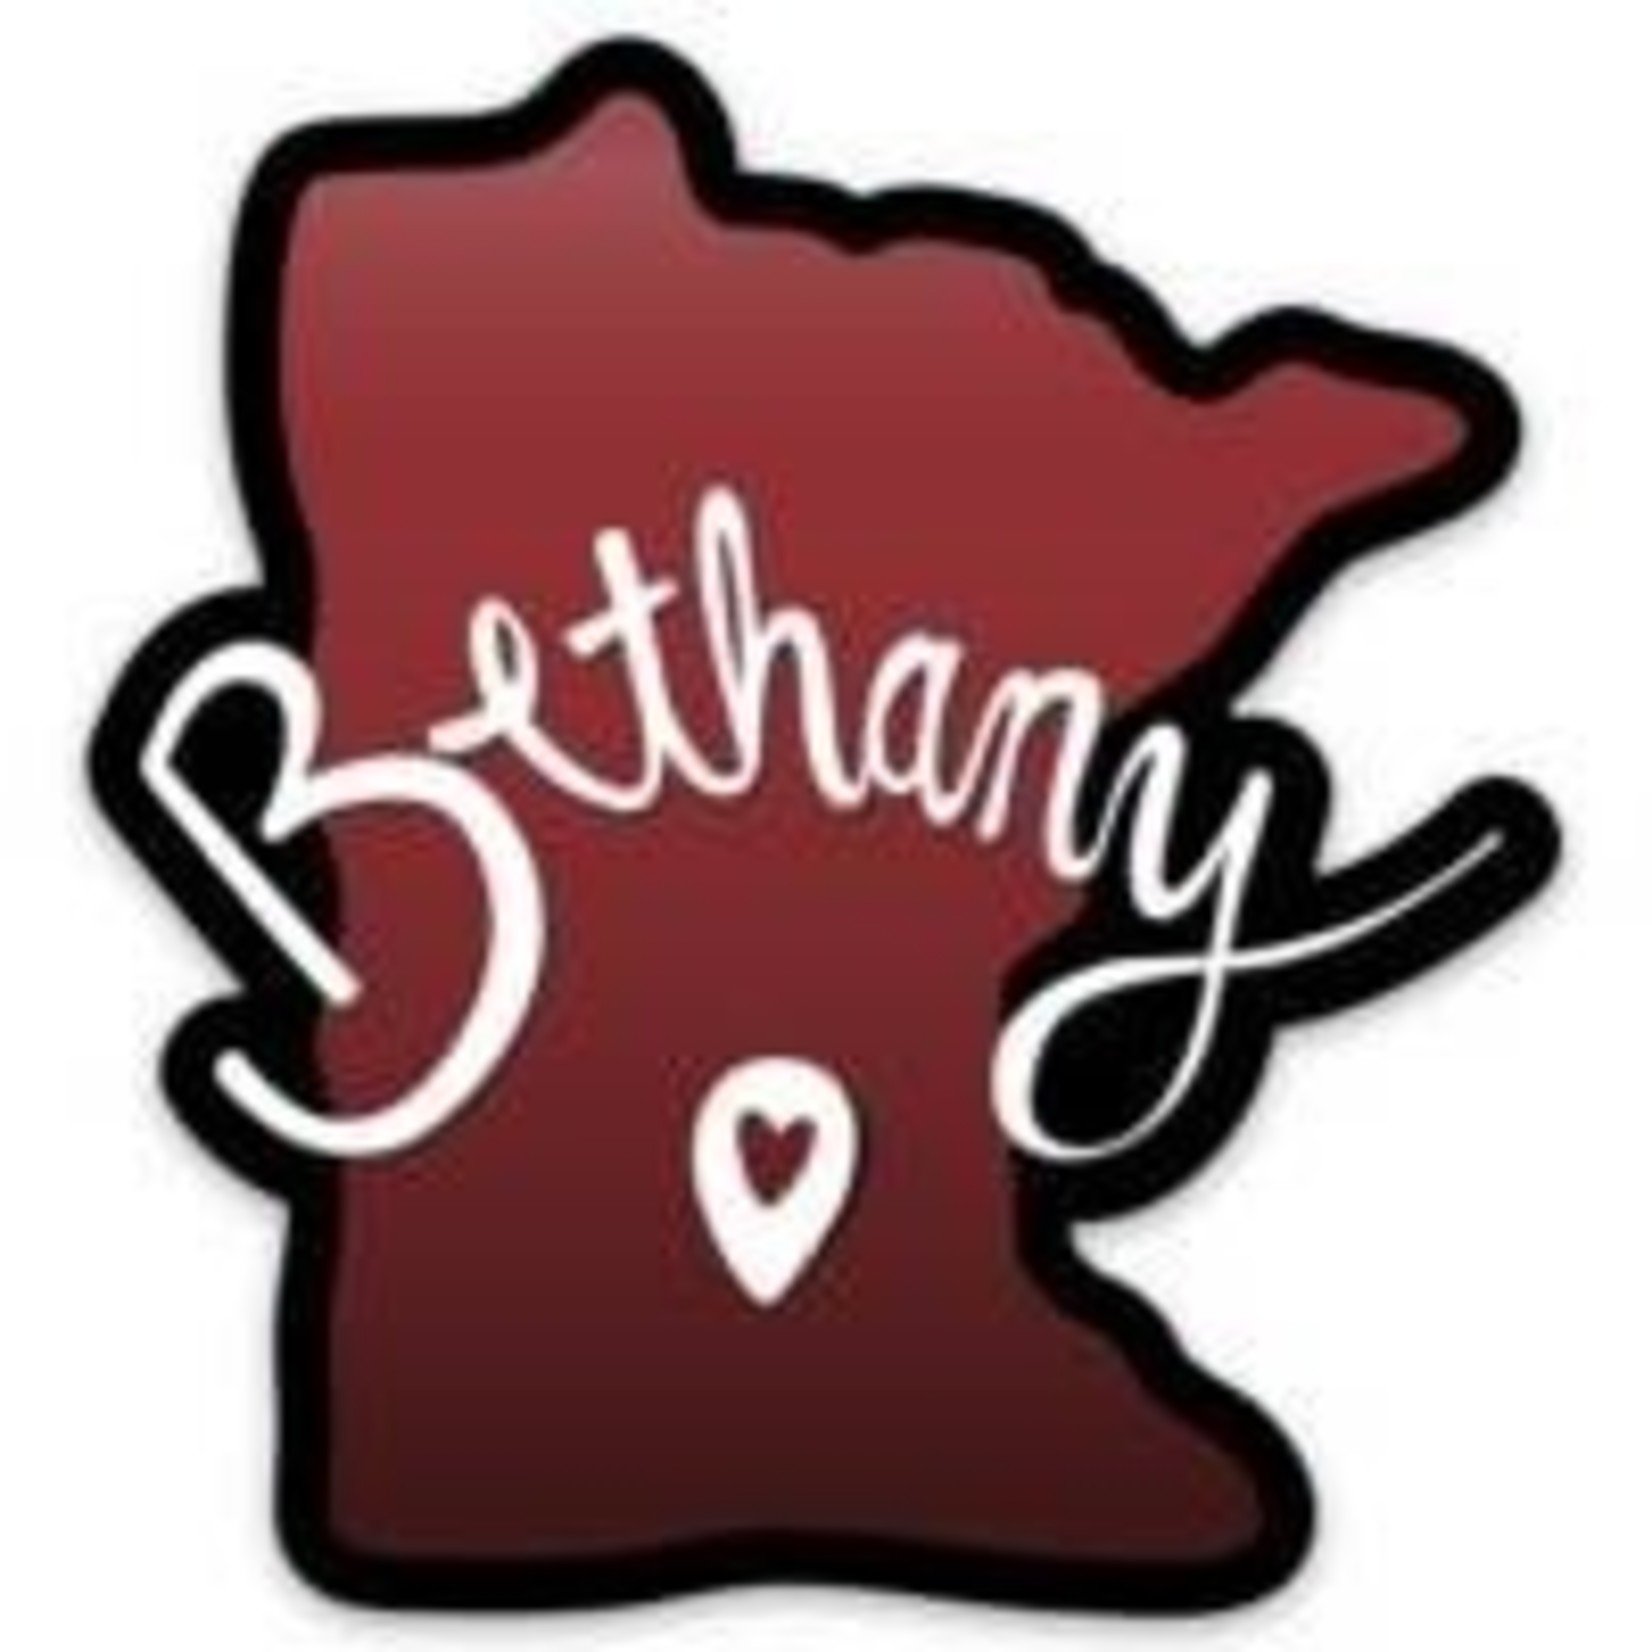 Bethany Minnesota Heart Sticker